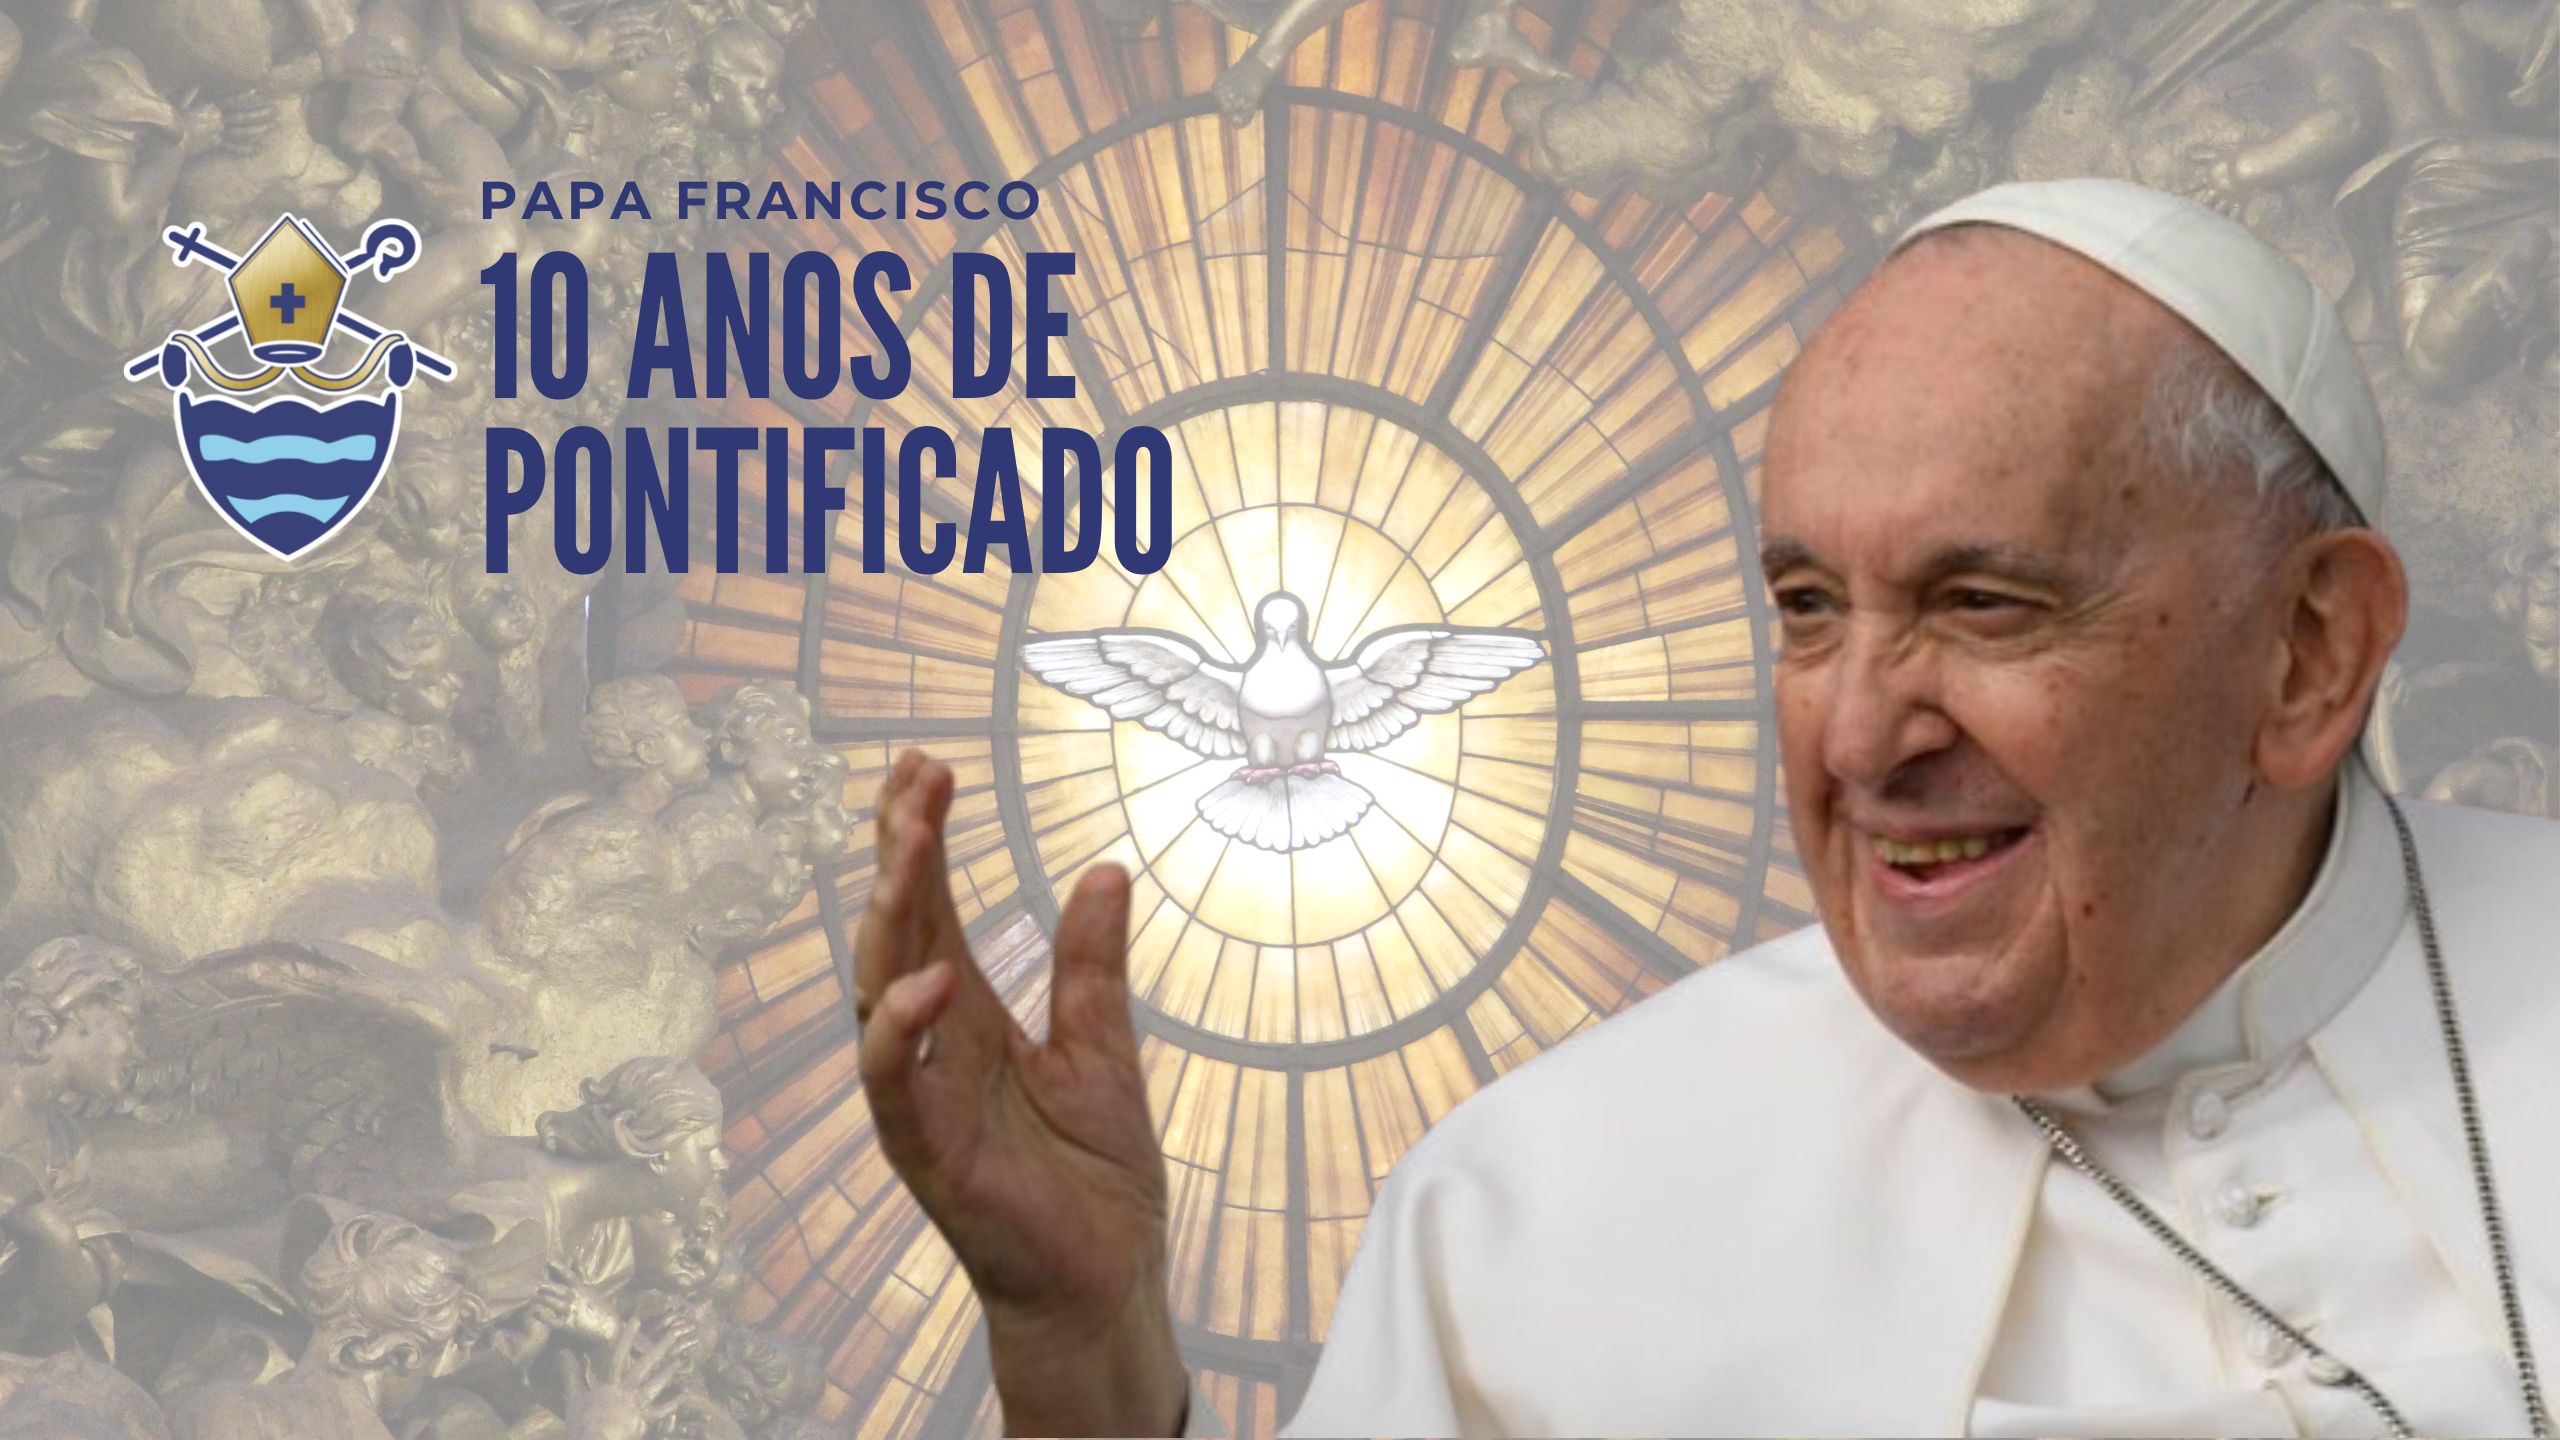 Evangelii Gaudium, primeira Exortação Apostólica do Papa Francisco «  Paróquia São Francisco de Assis